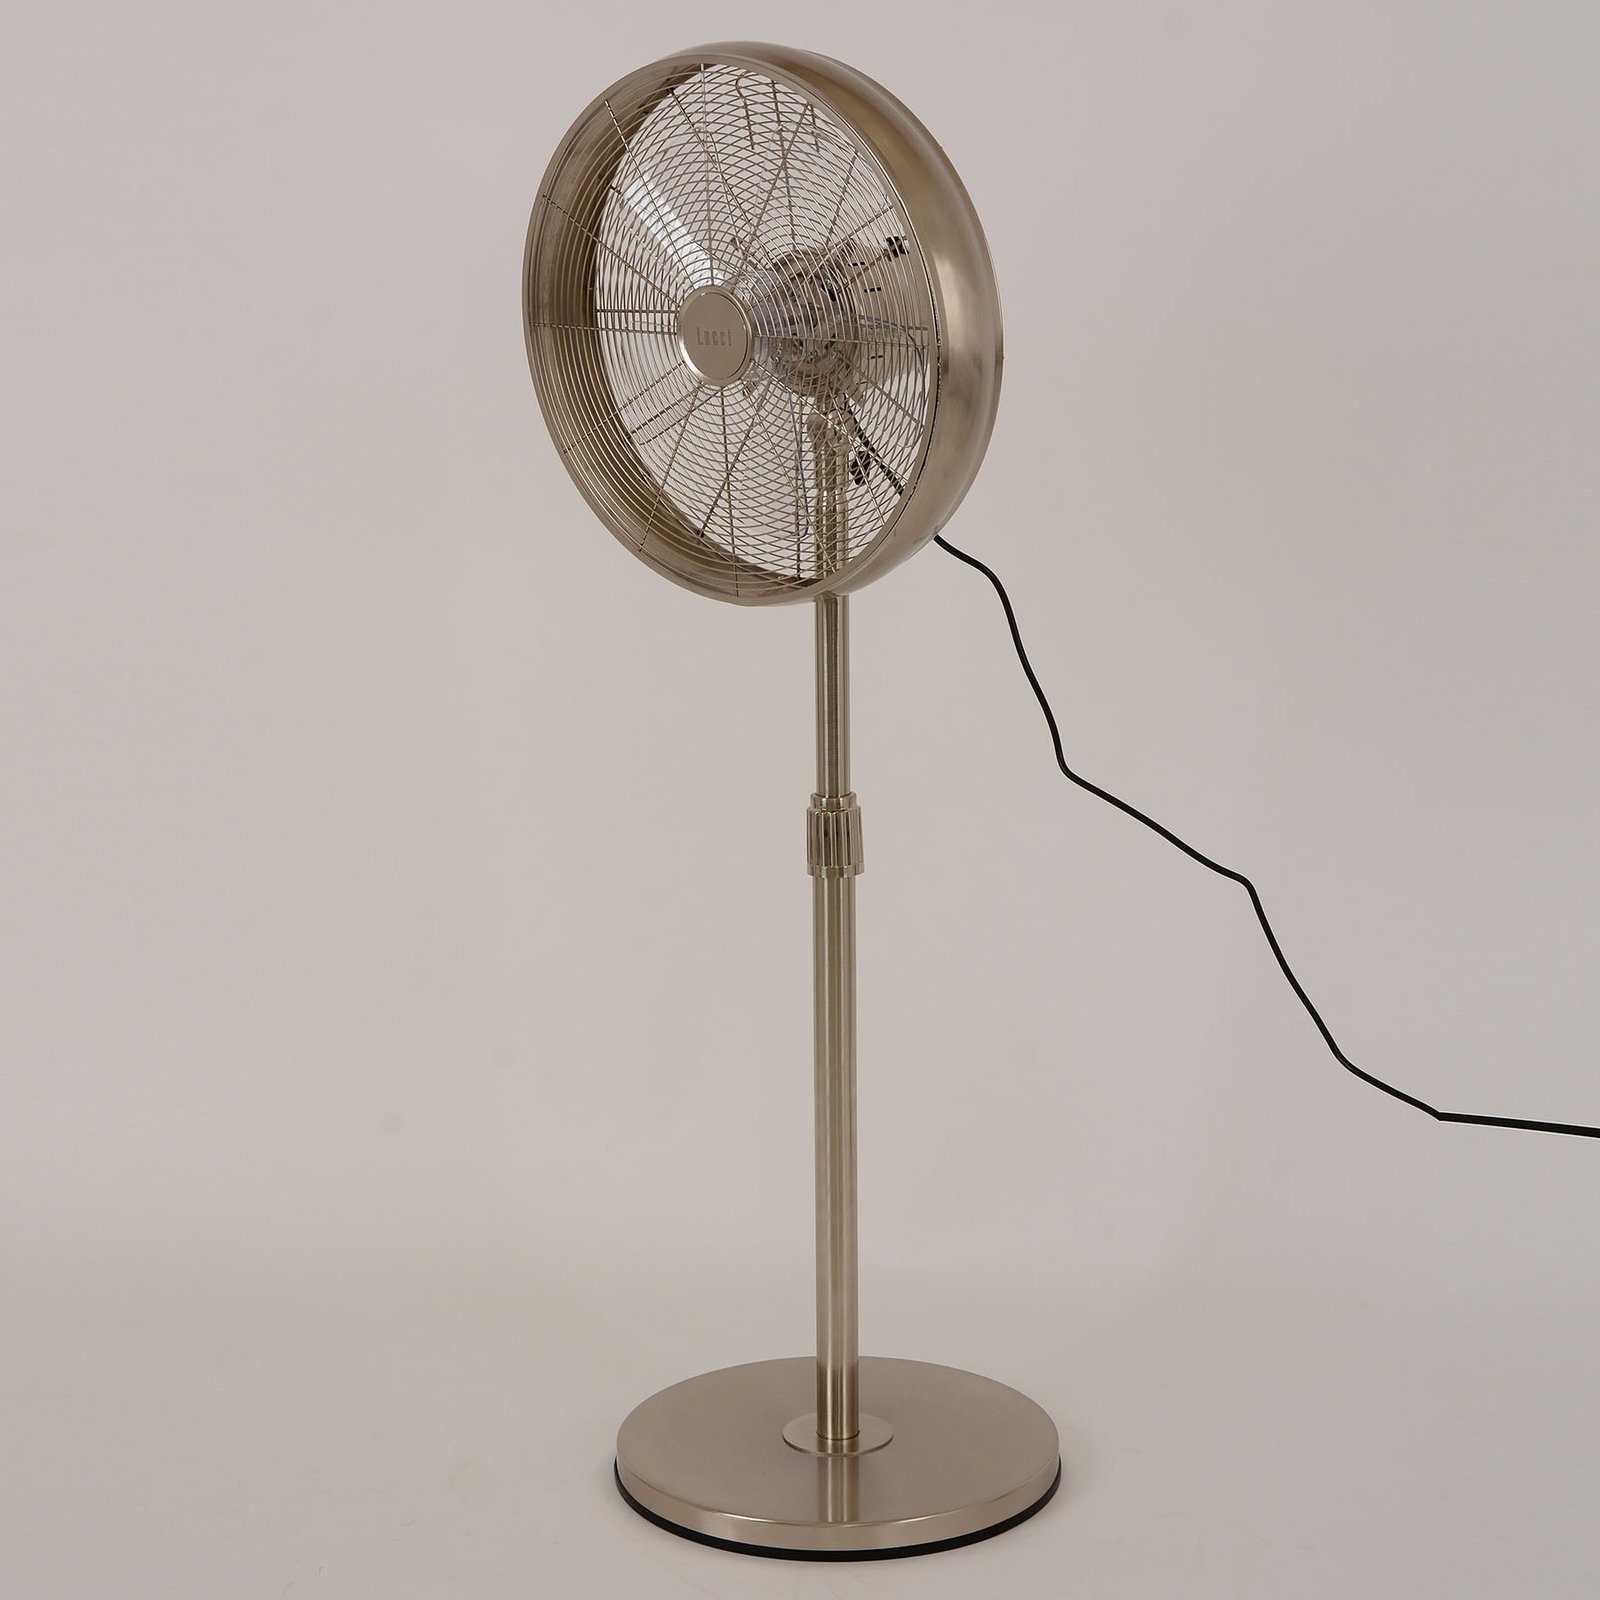 Beacon állványos ventilátor Breeze króm színű, kerek talapzat, csendes